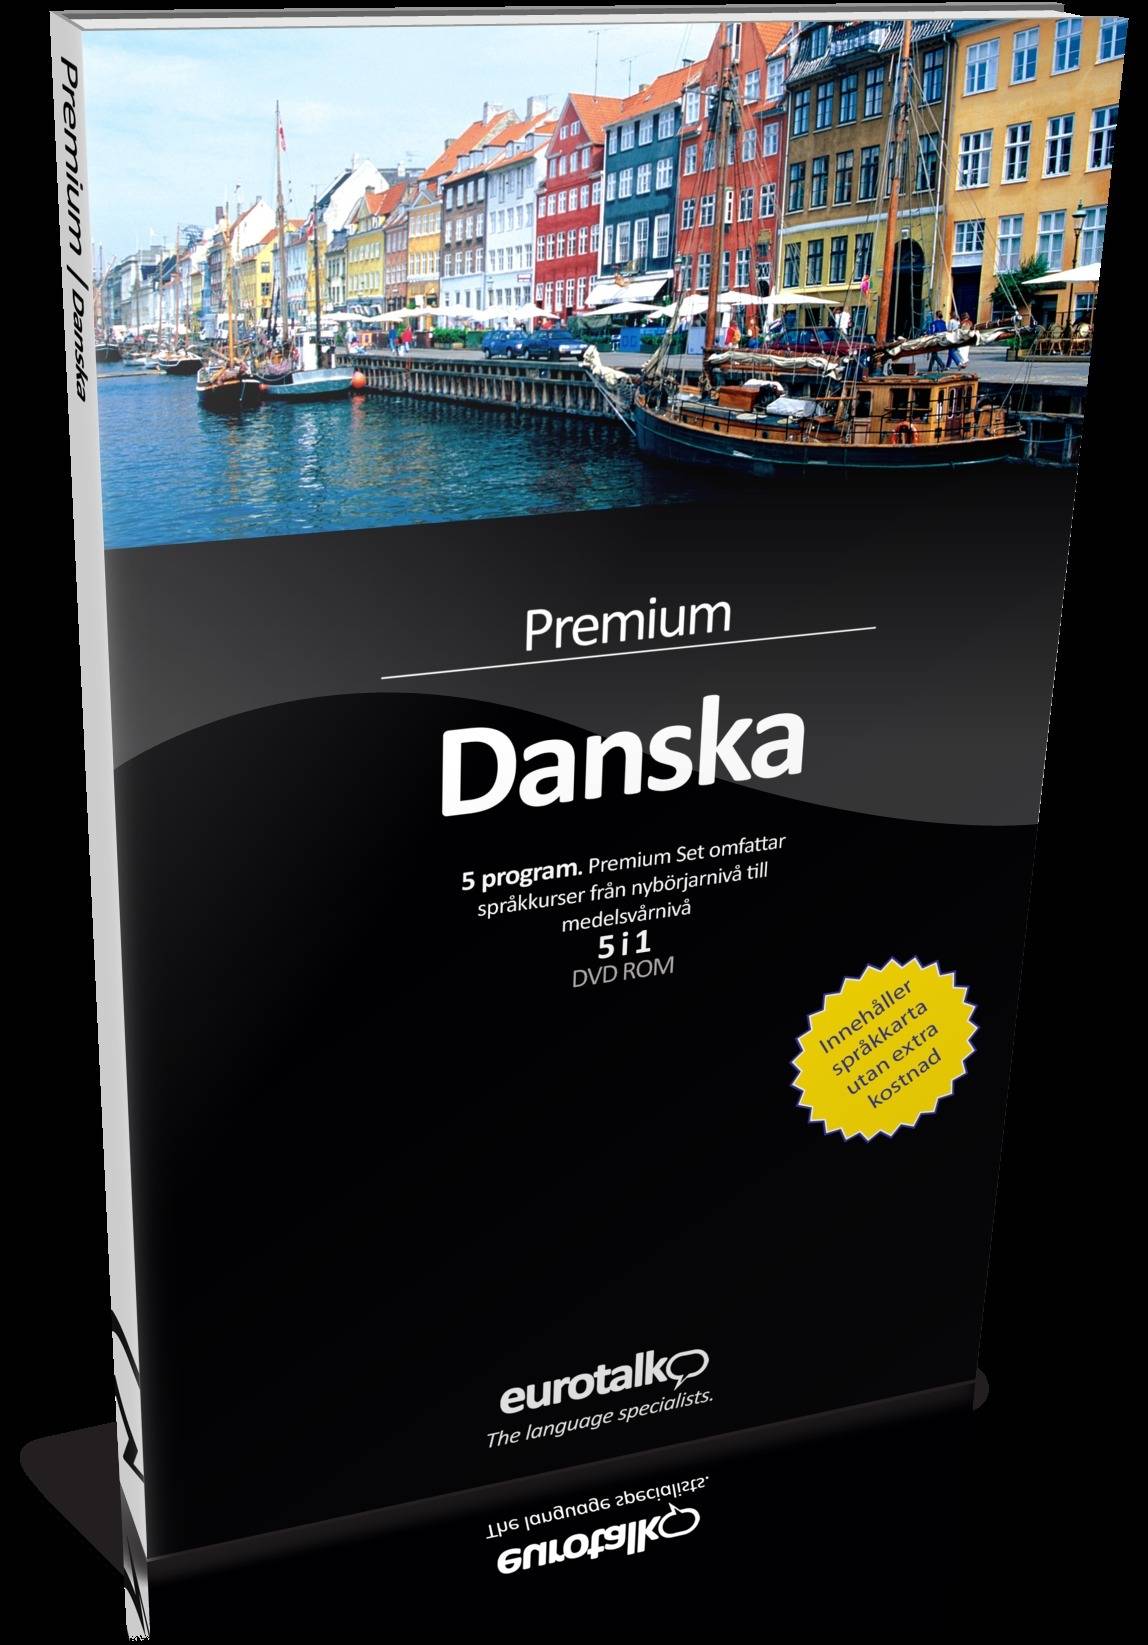 Premium Set Danska